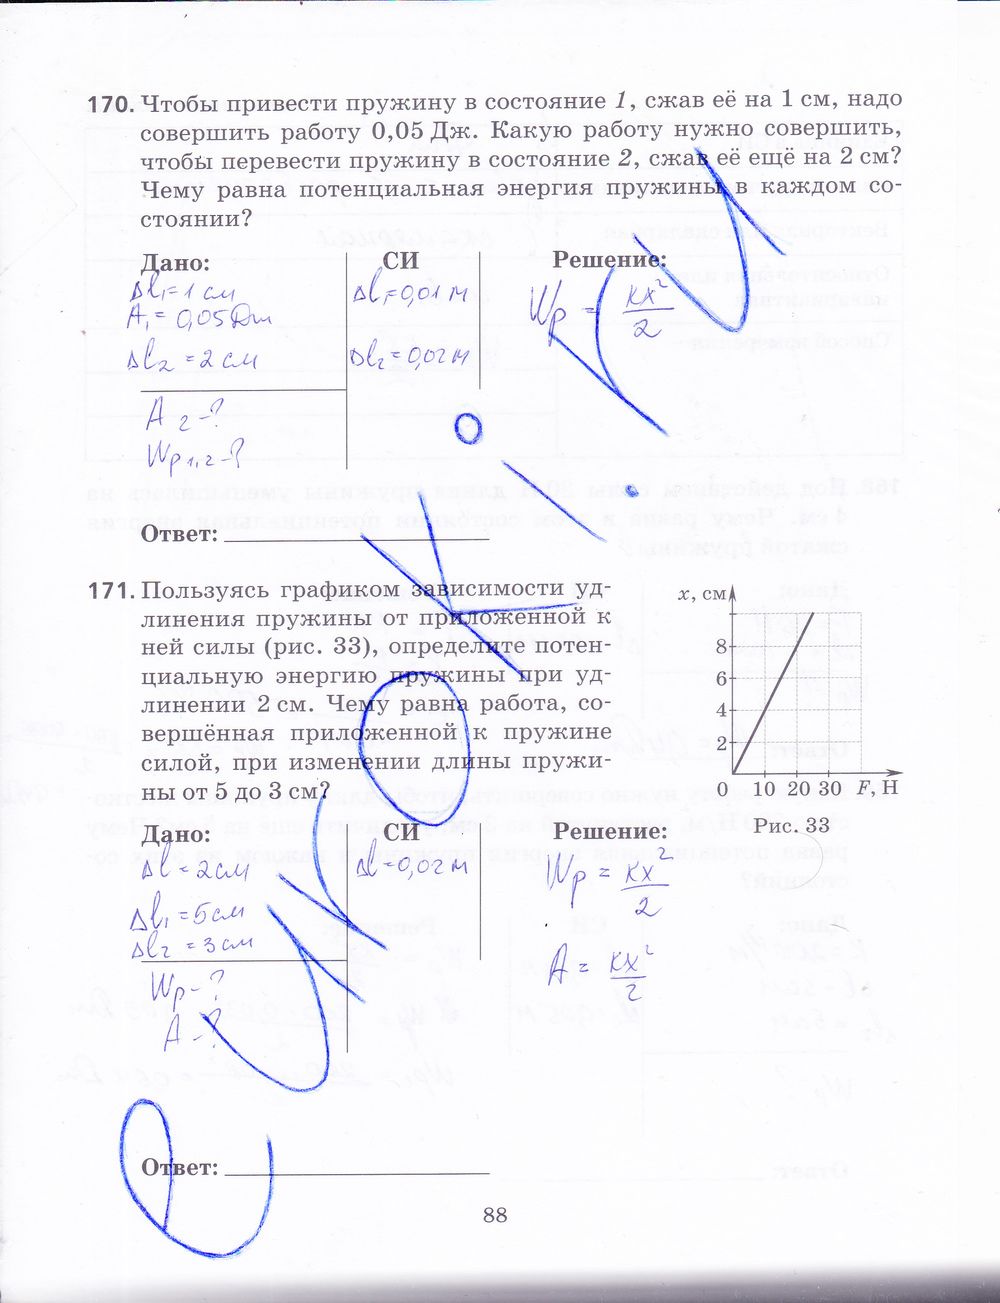 ГДЗ Физика 9 класс - стр. 88